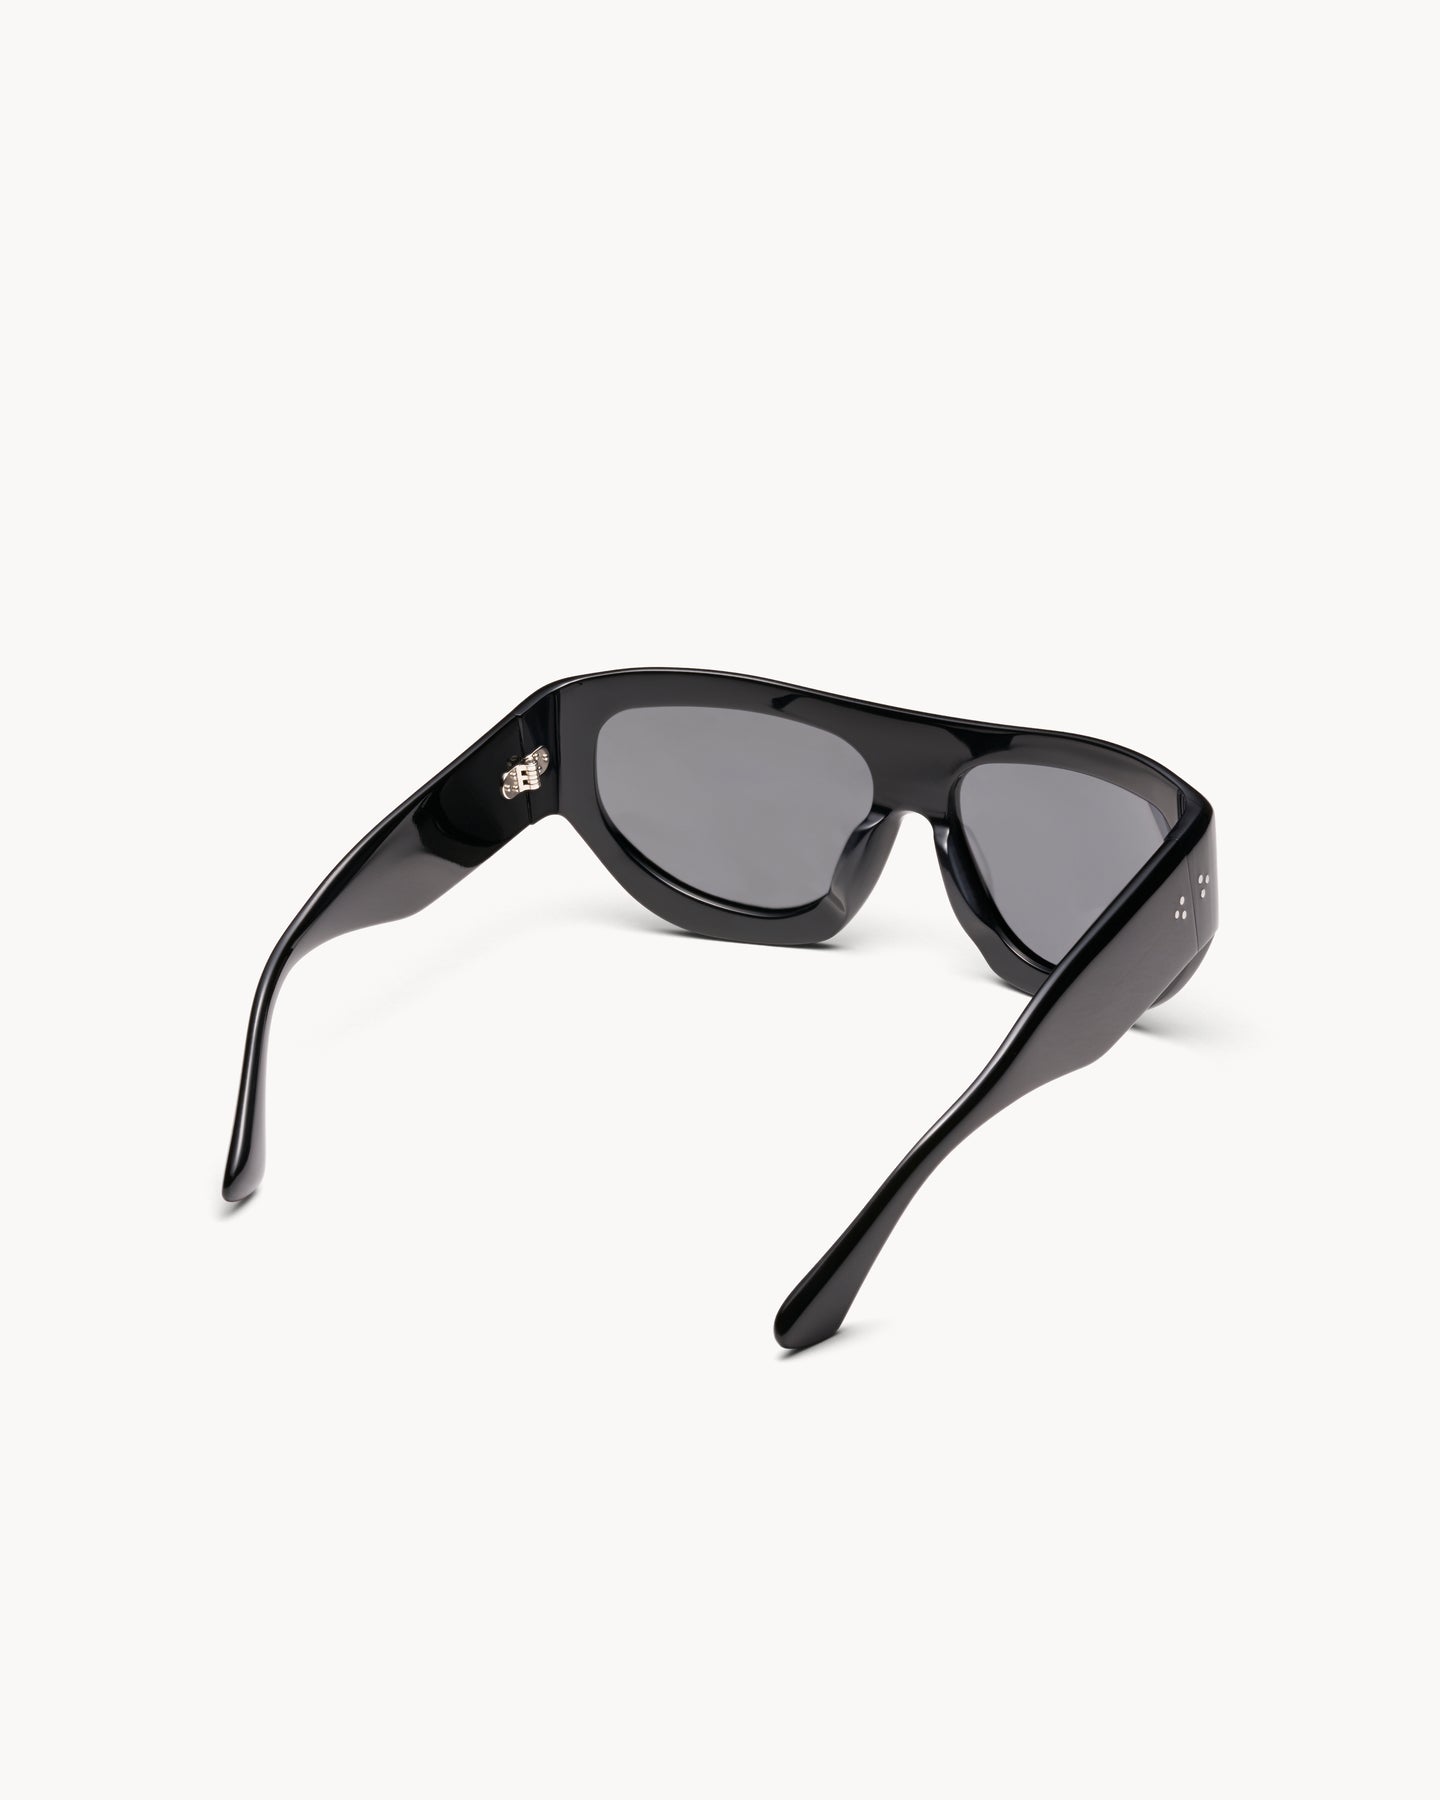 Port Tanger Dost Sunglasses in Black Acetate and Black Lenses 3